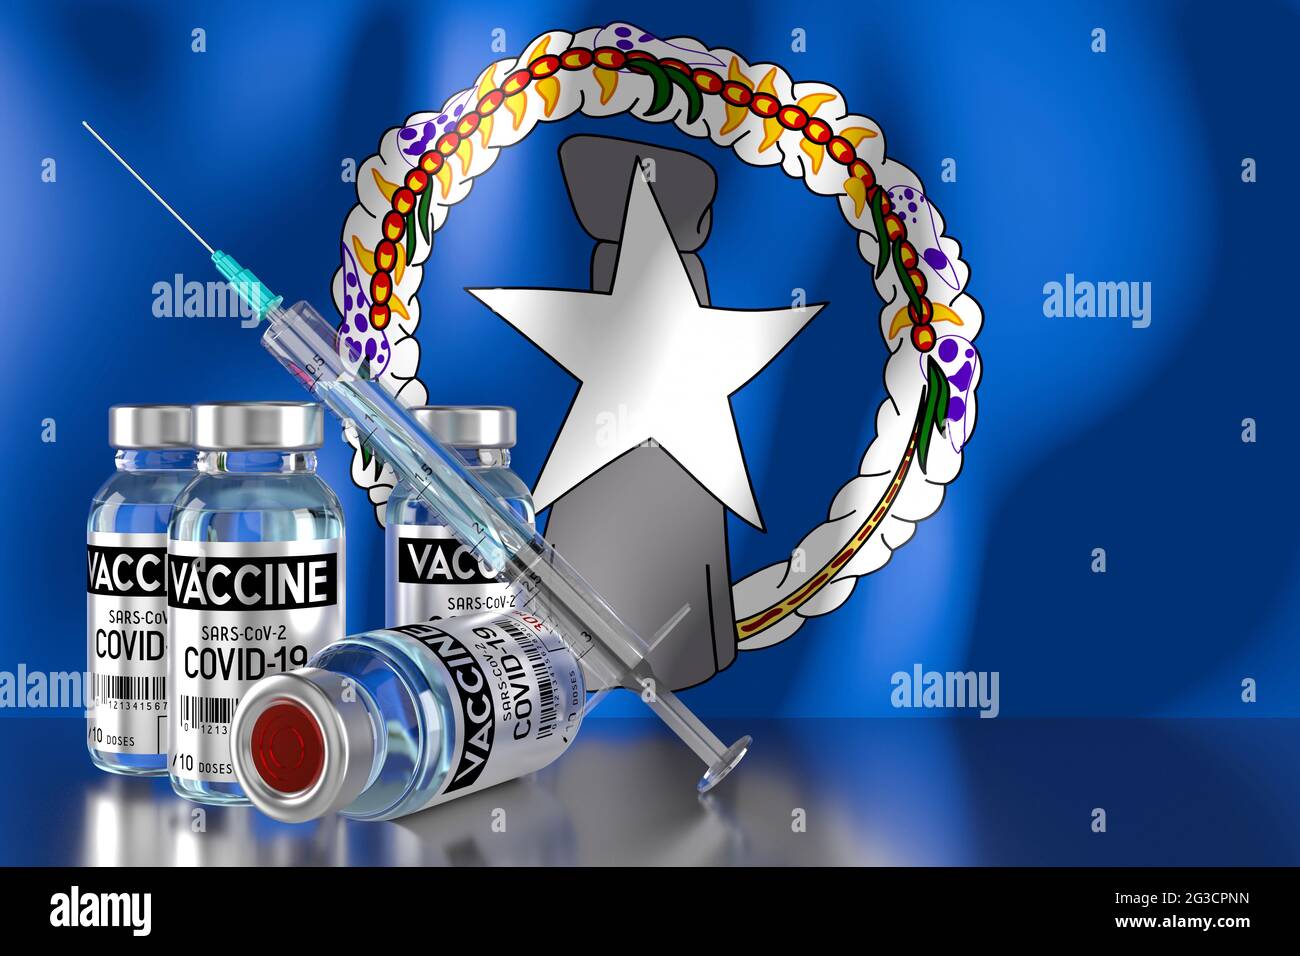 Covid-19, SARS-CoV-2, Coronavirus-Impfprogramm auf den nördlichen Marianen, vier Fläschchen und Spritze - 3D-Abbildung Stockfoto